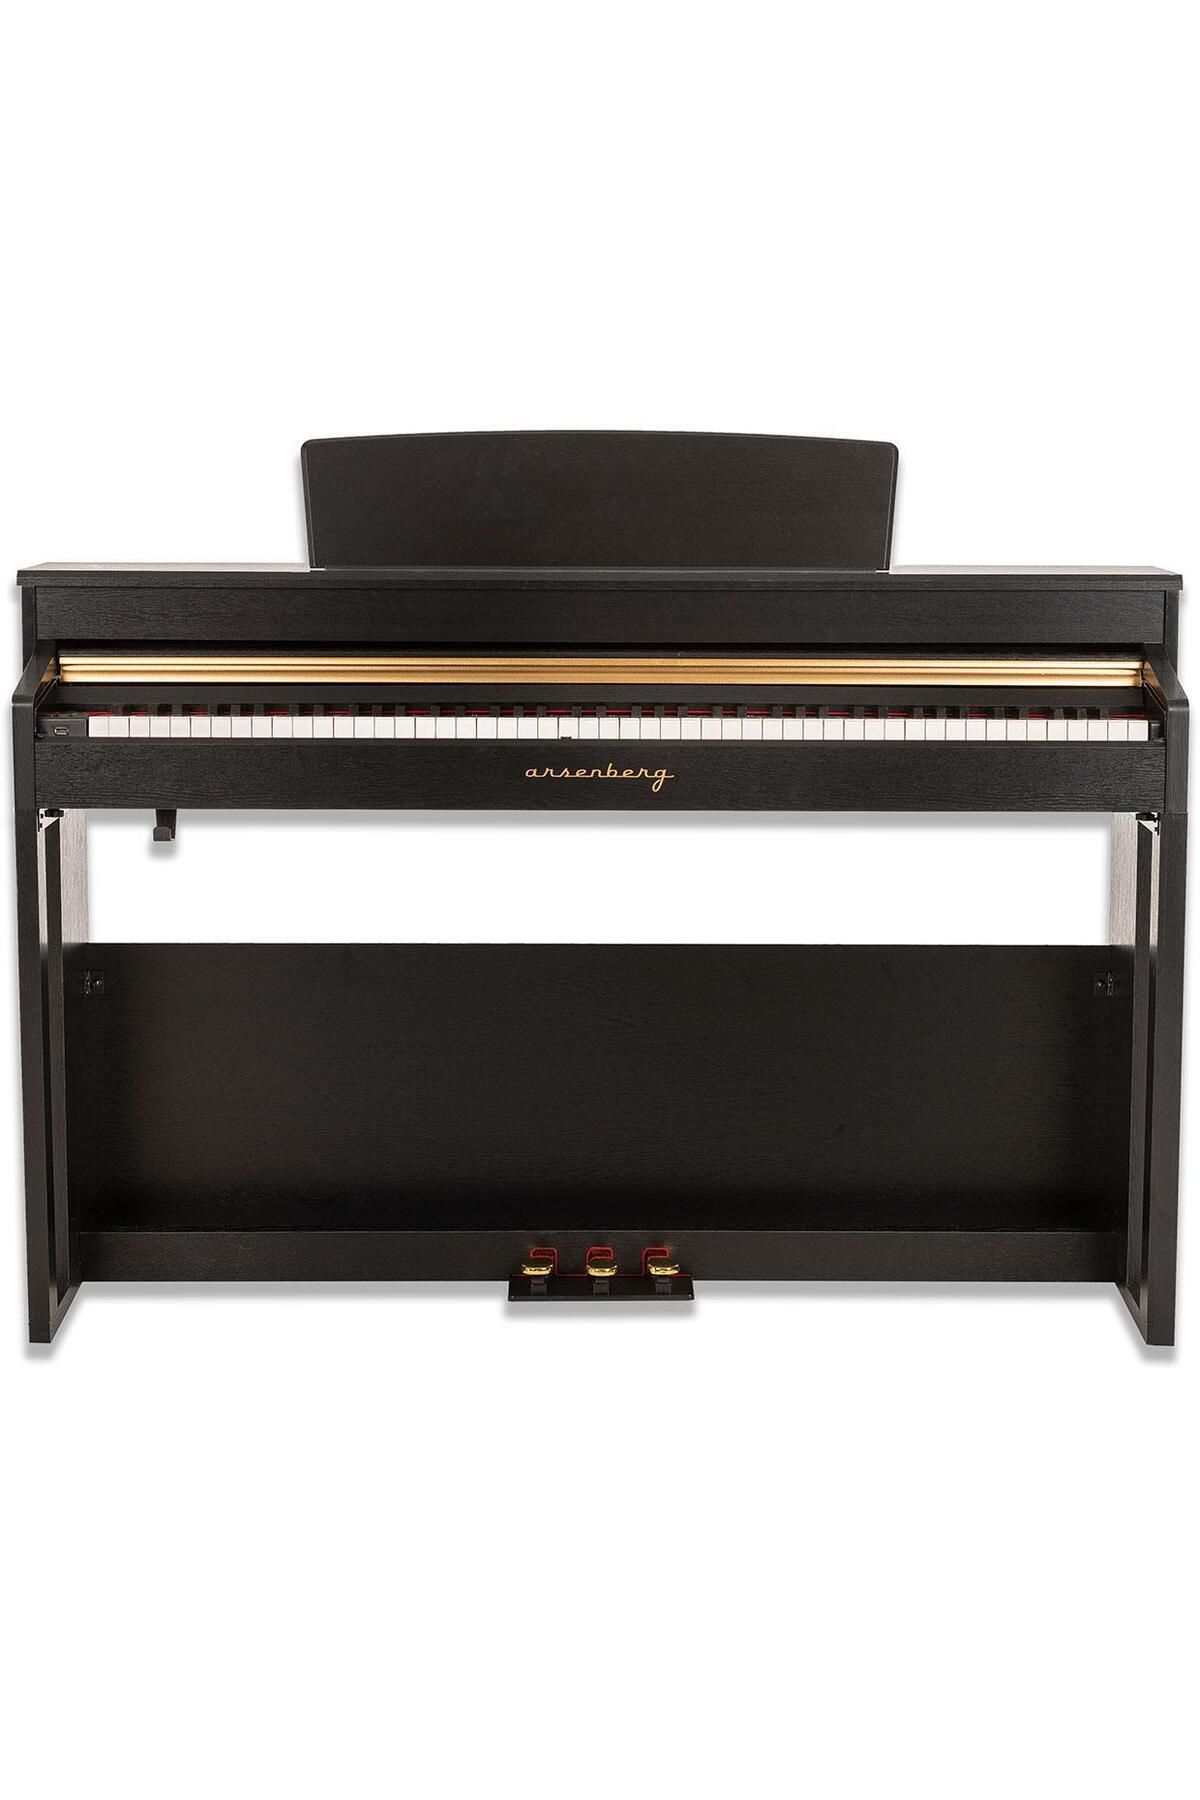 Arsenberg Adp1968b Siyah Dijital Piyano